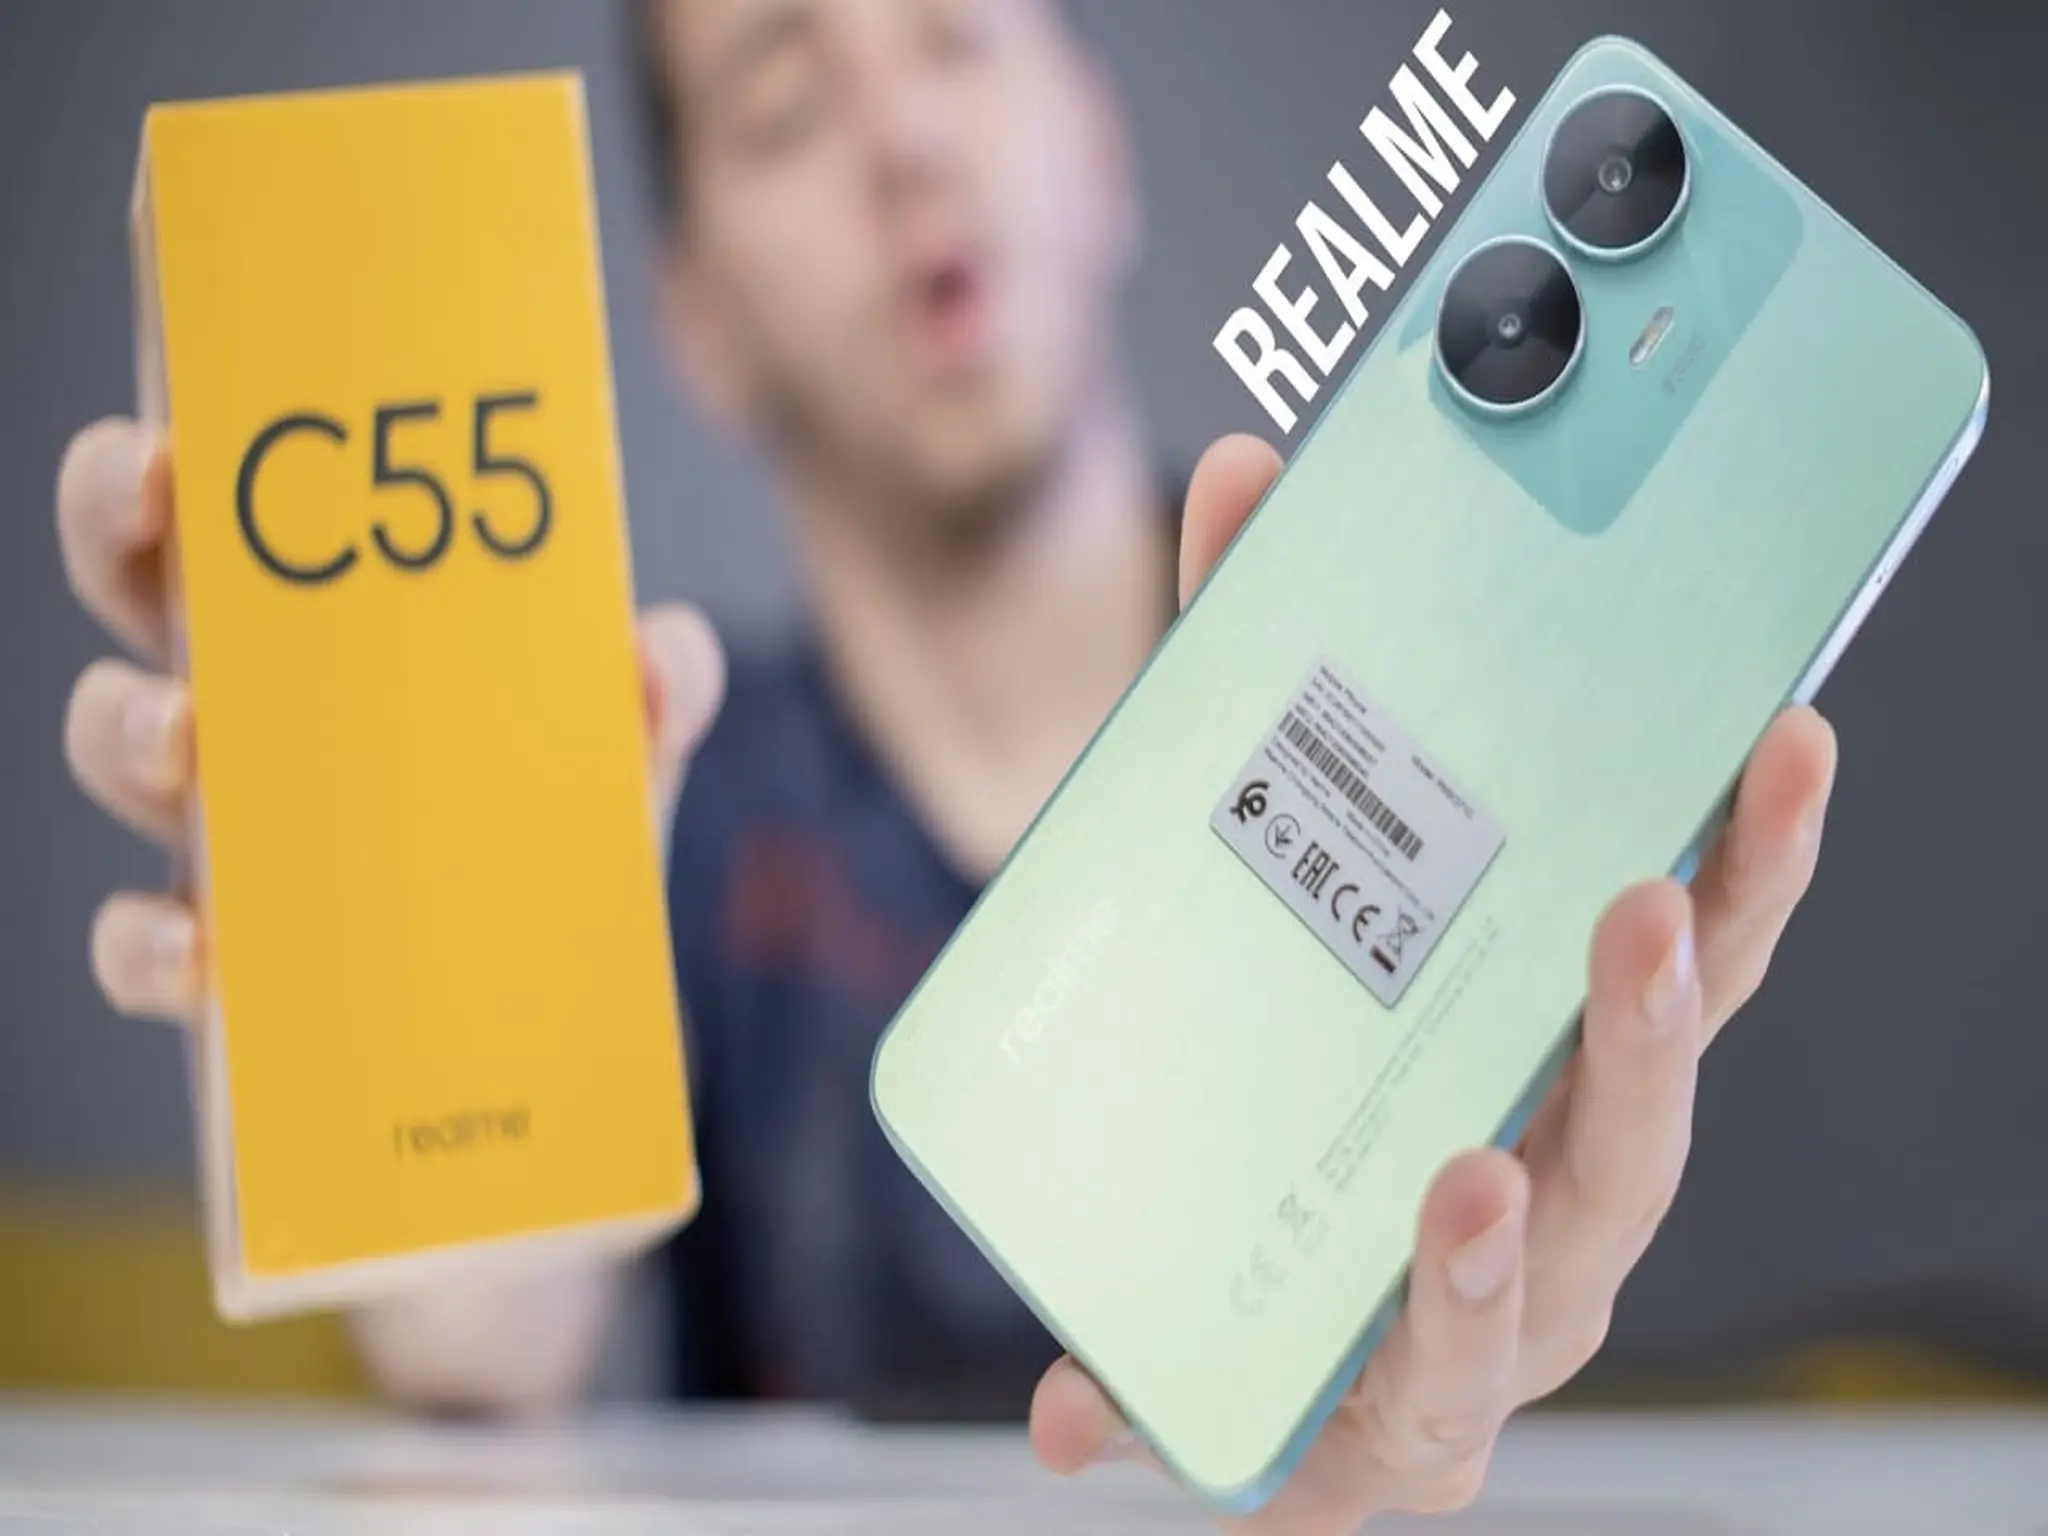 سعر ومواصفات هاتف Realme C55 عملاق الفئة المتوسطة